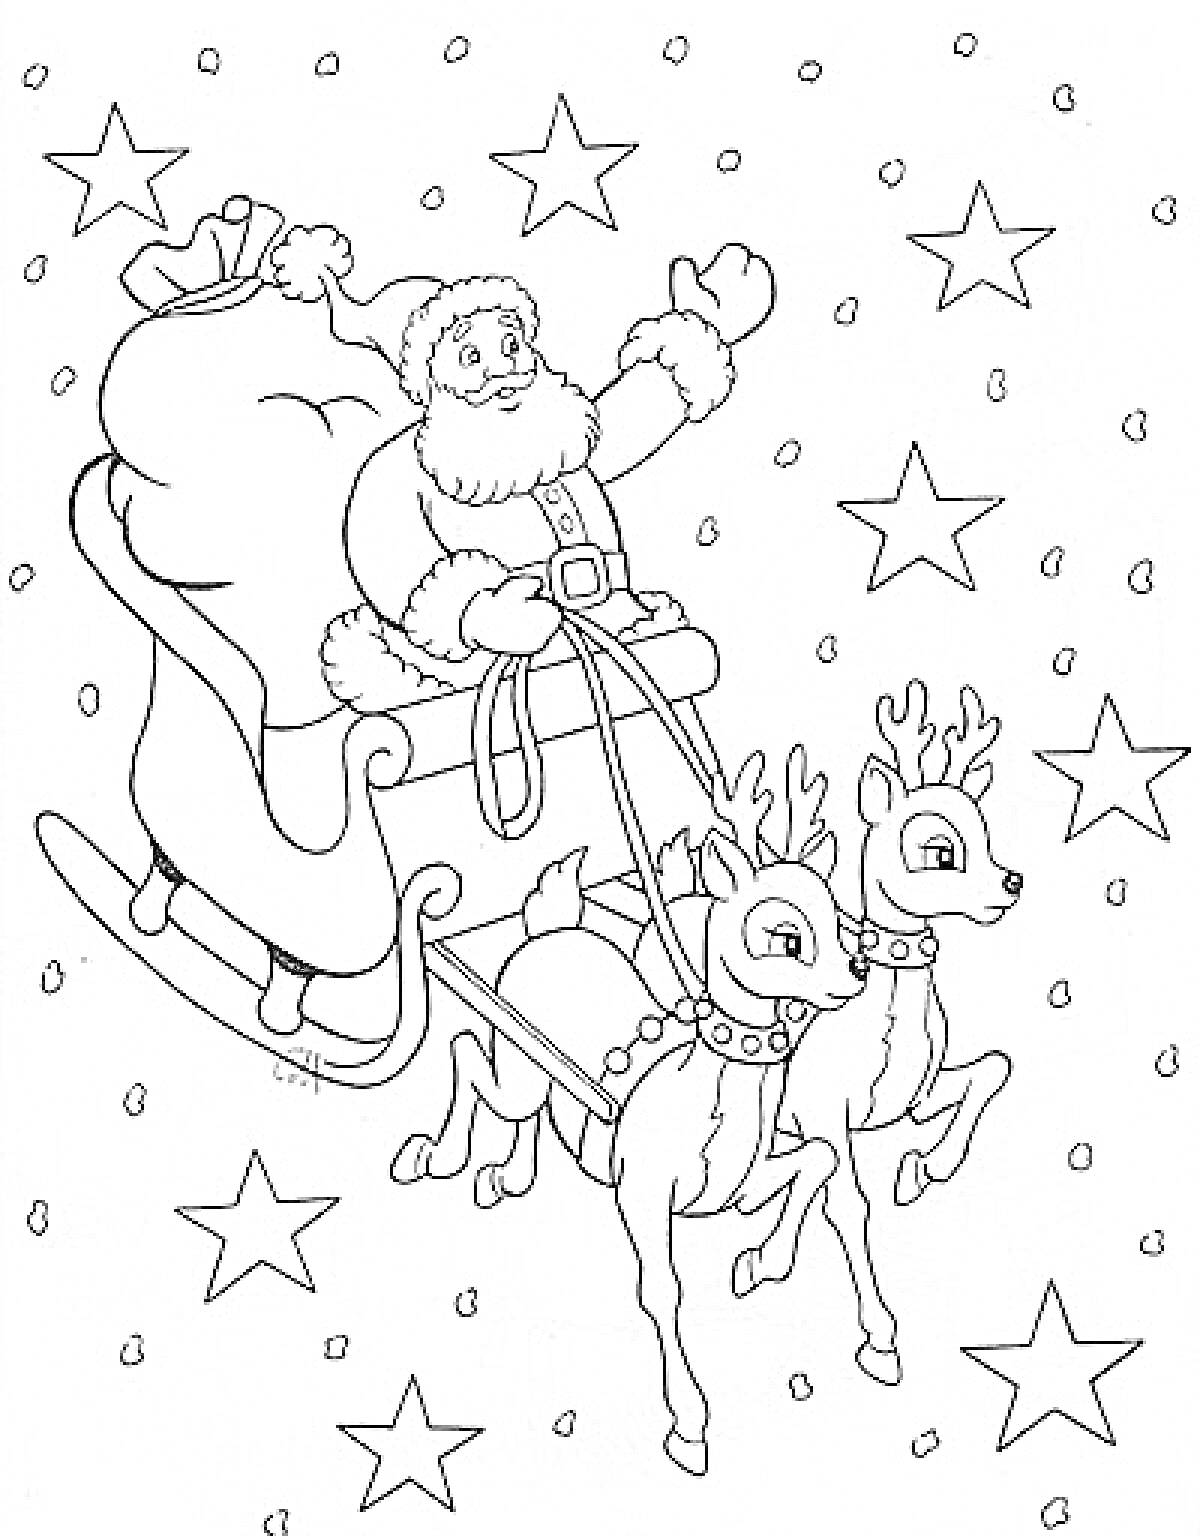 Санта-Клаус в санях с мешком подарков и двумя оленями на фоне звезд и падающего снега